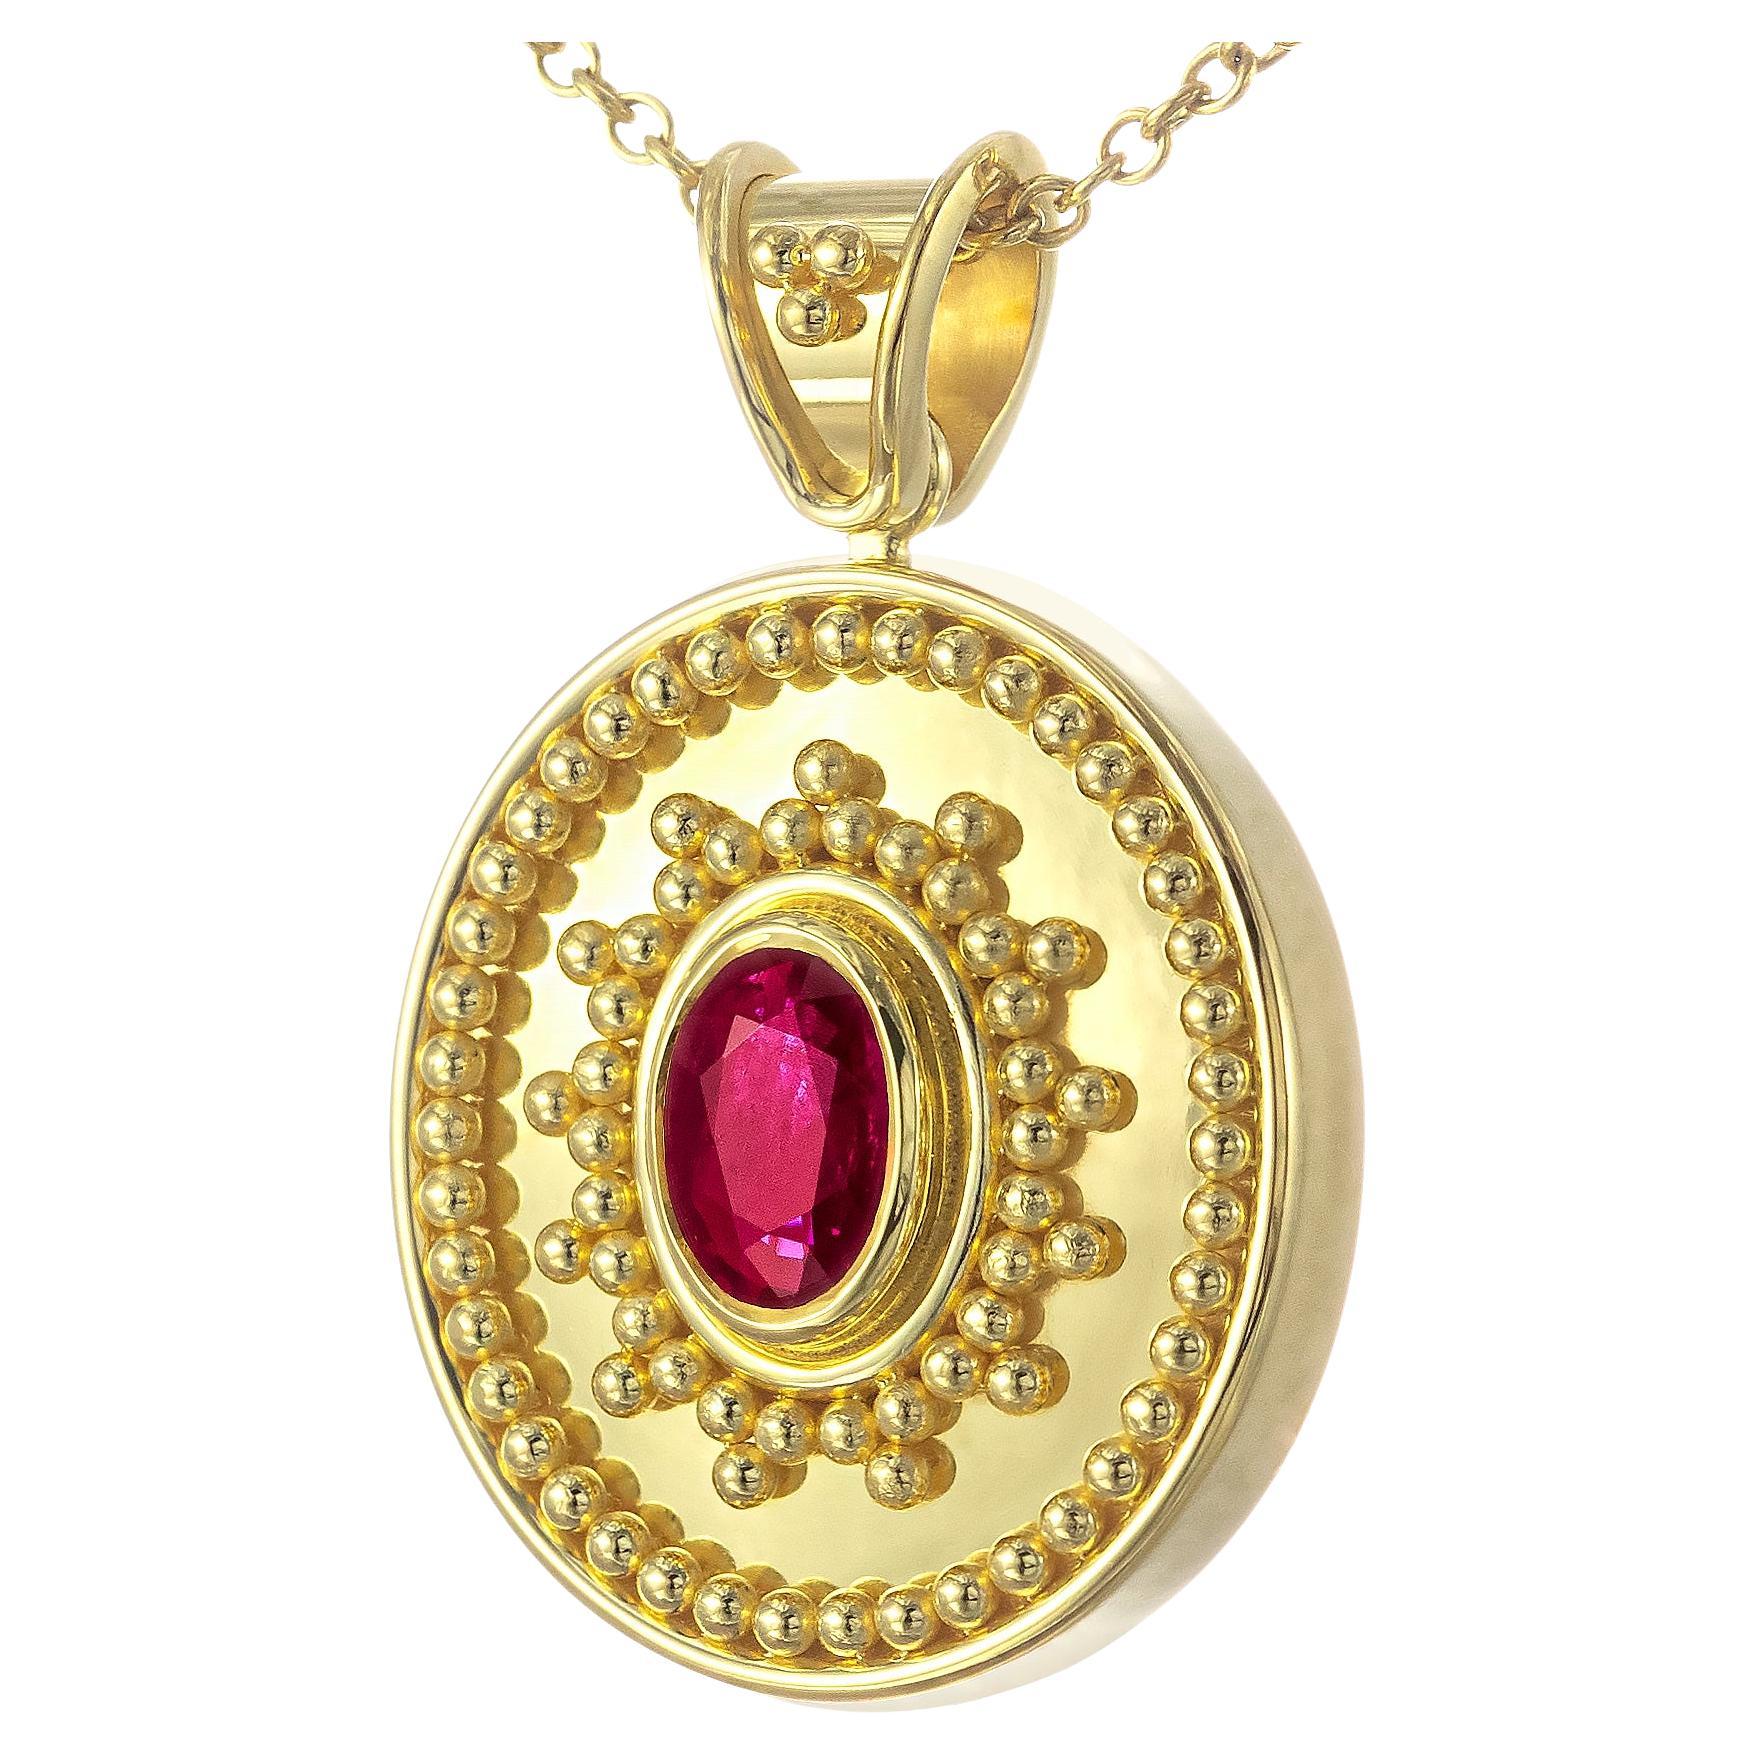 Ovaler byzantinischer Goldanhänger mit Rubin und glänzender Oberfläche